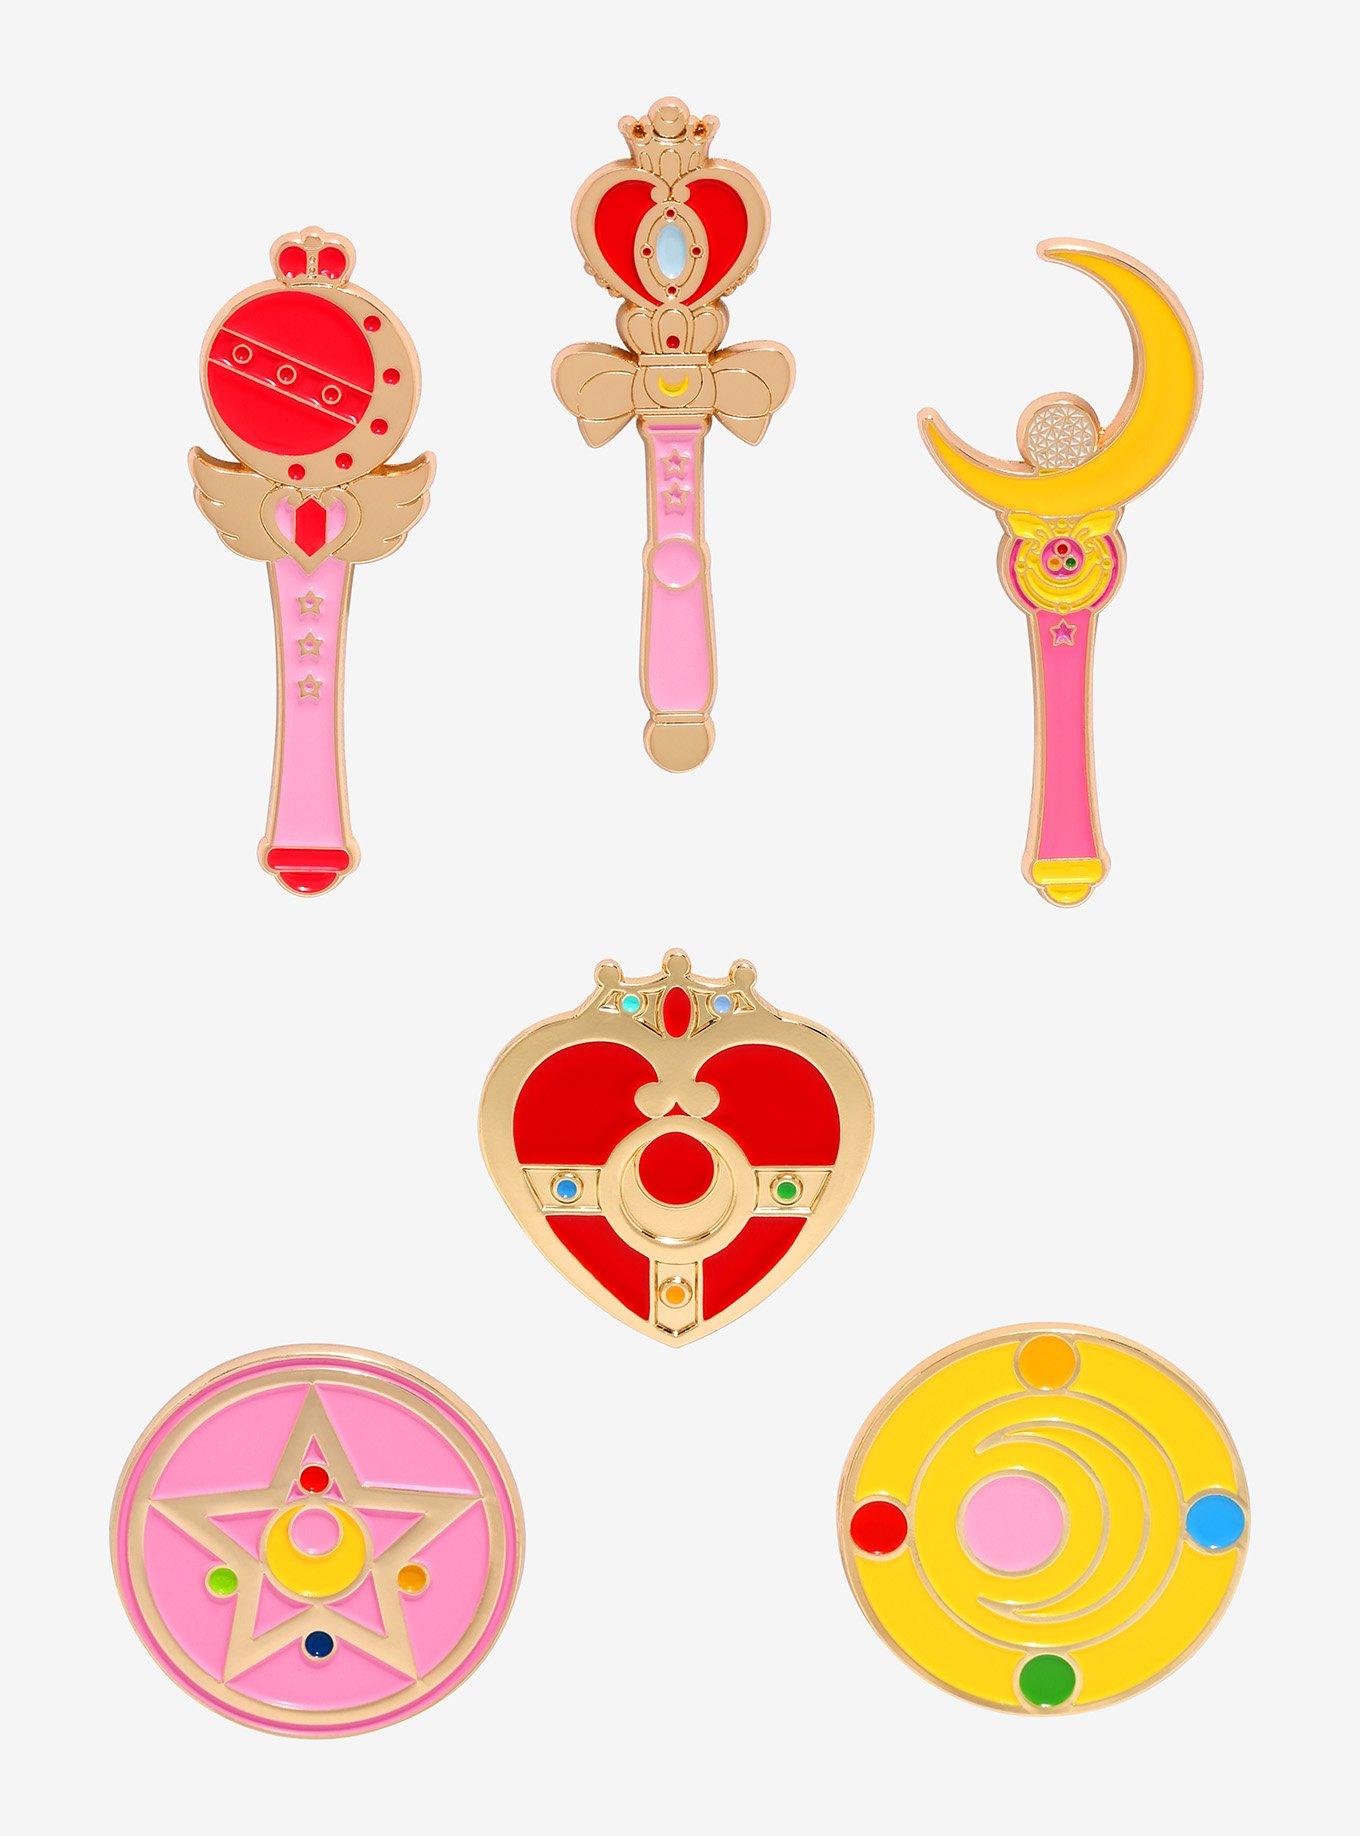 Sailor Moon Pin  Geschenke und Gadgets für Nerds online kaufen